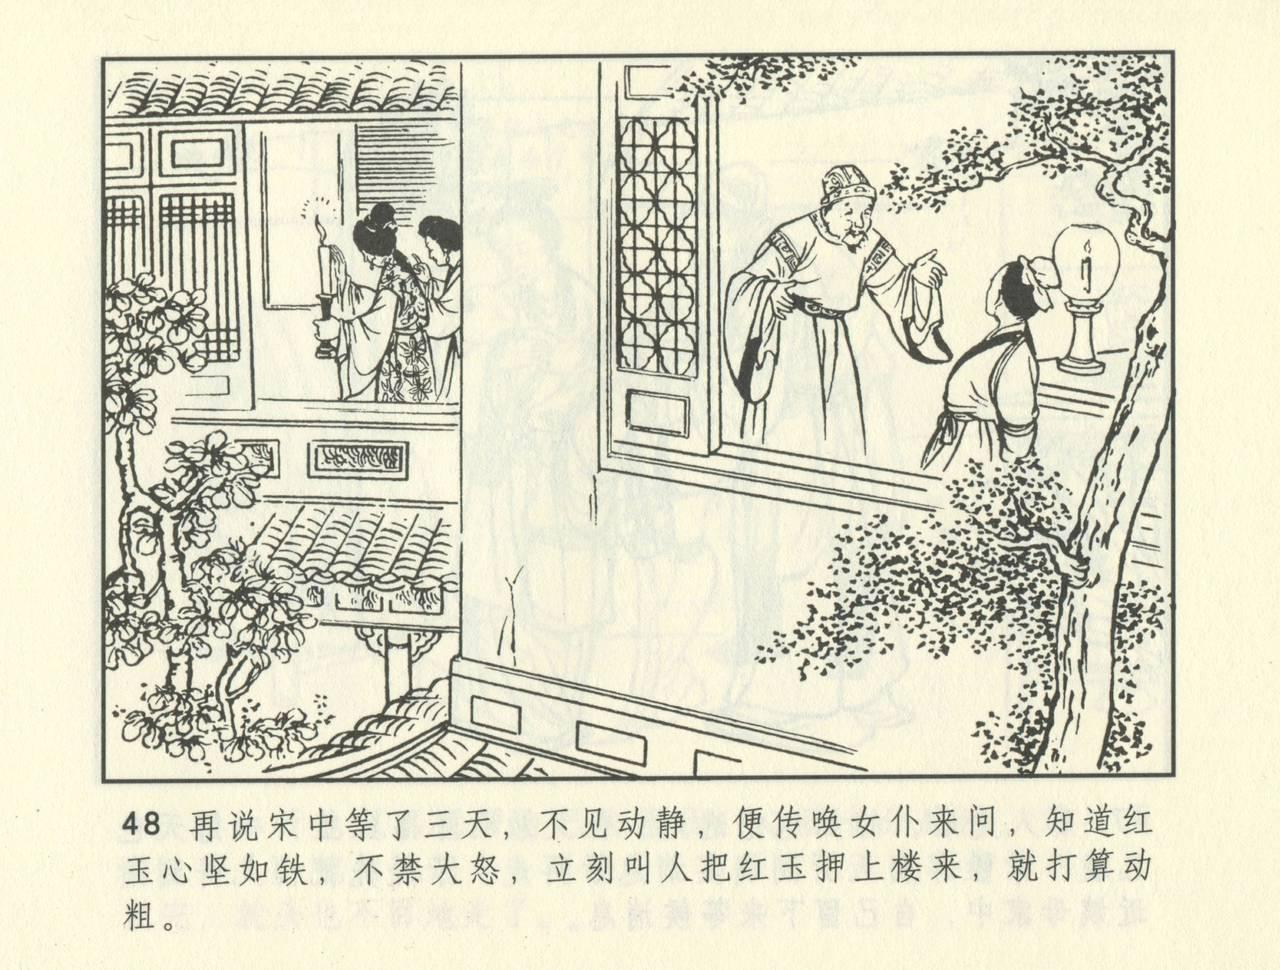 聊斋志异 张玮等绘 天津人民美术出版社 卷二十一 ~ 三十 388